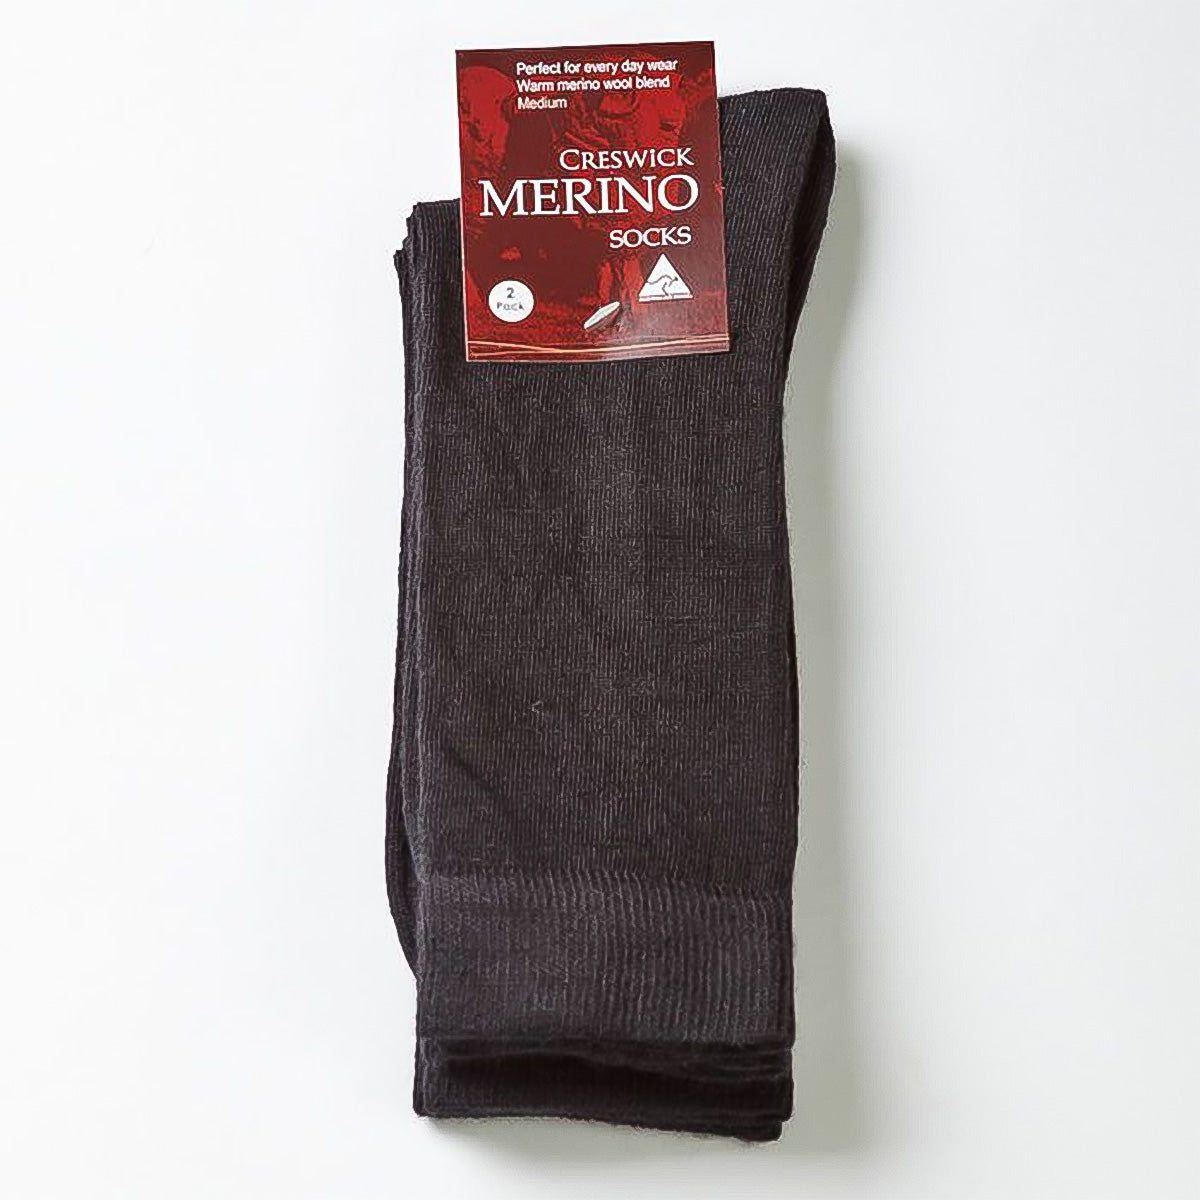 Merino Socks - 12 Pack